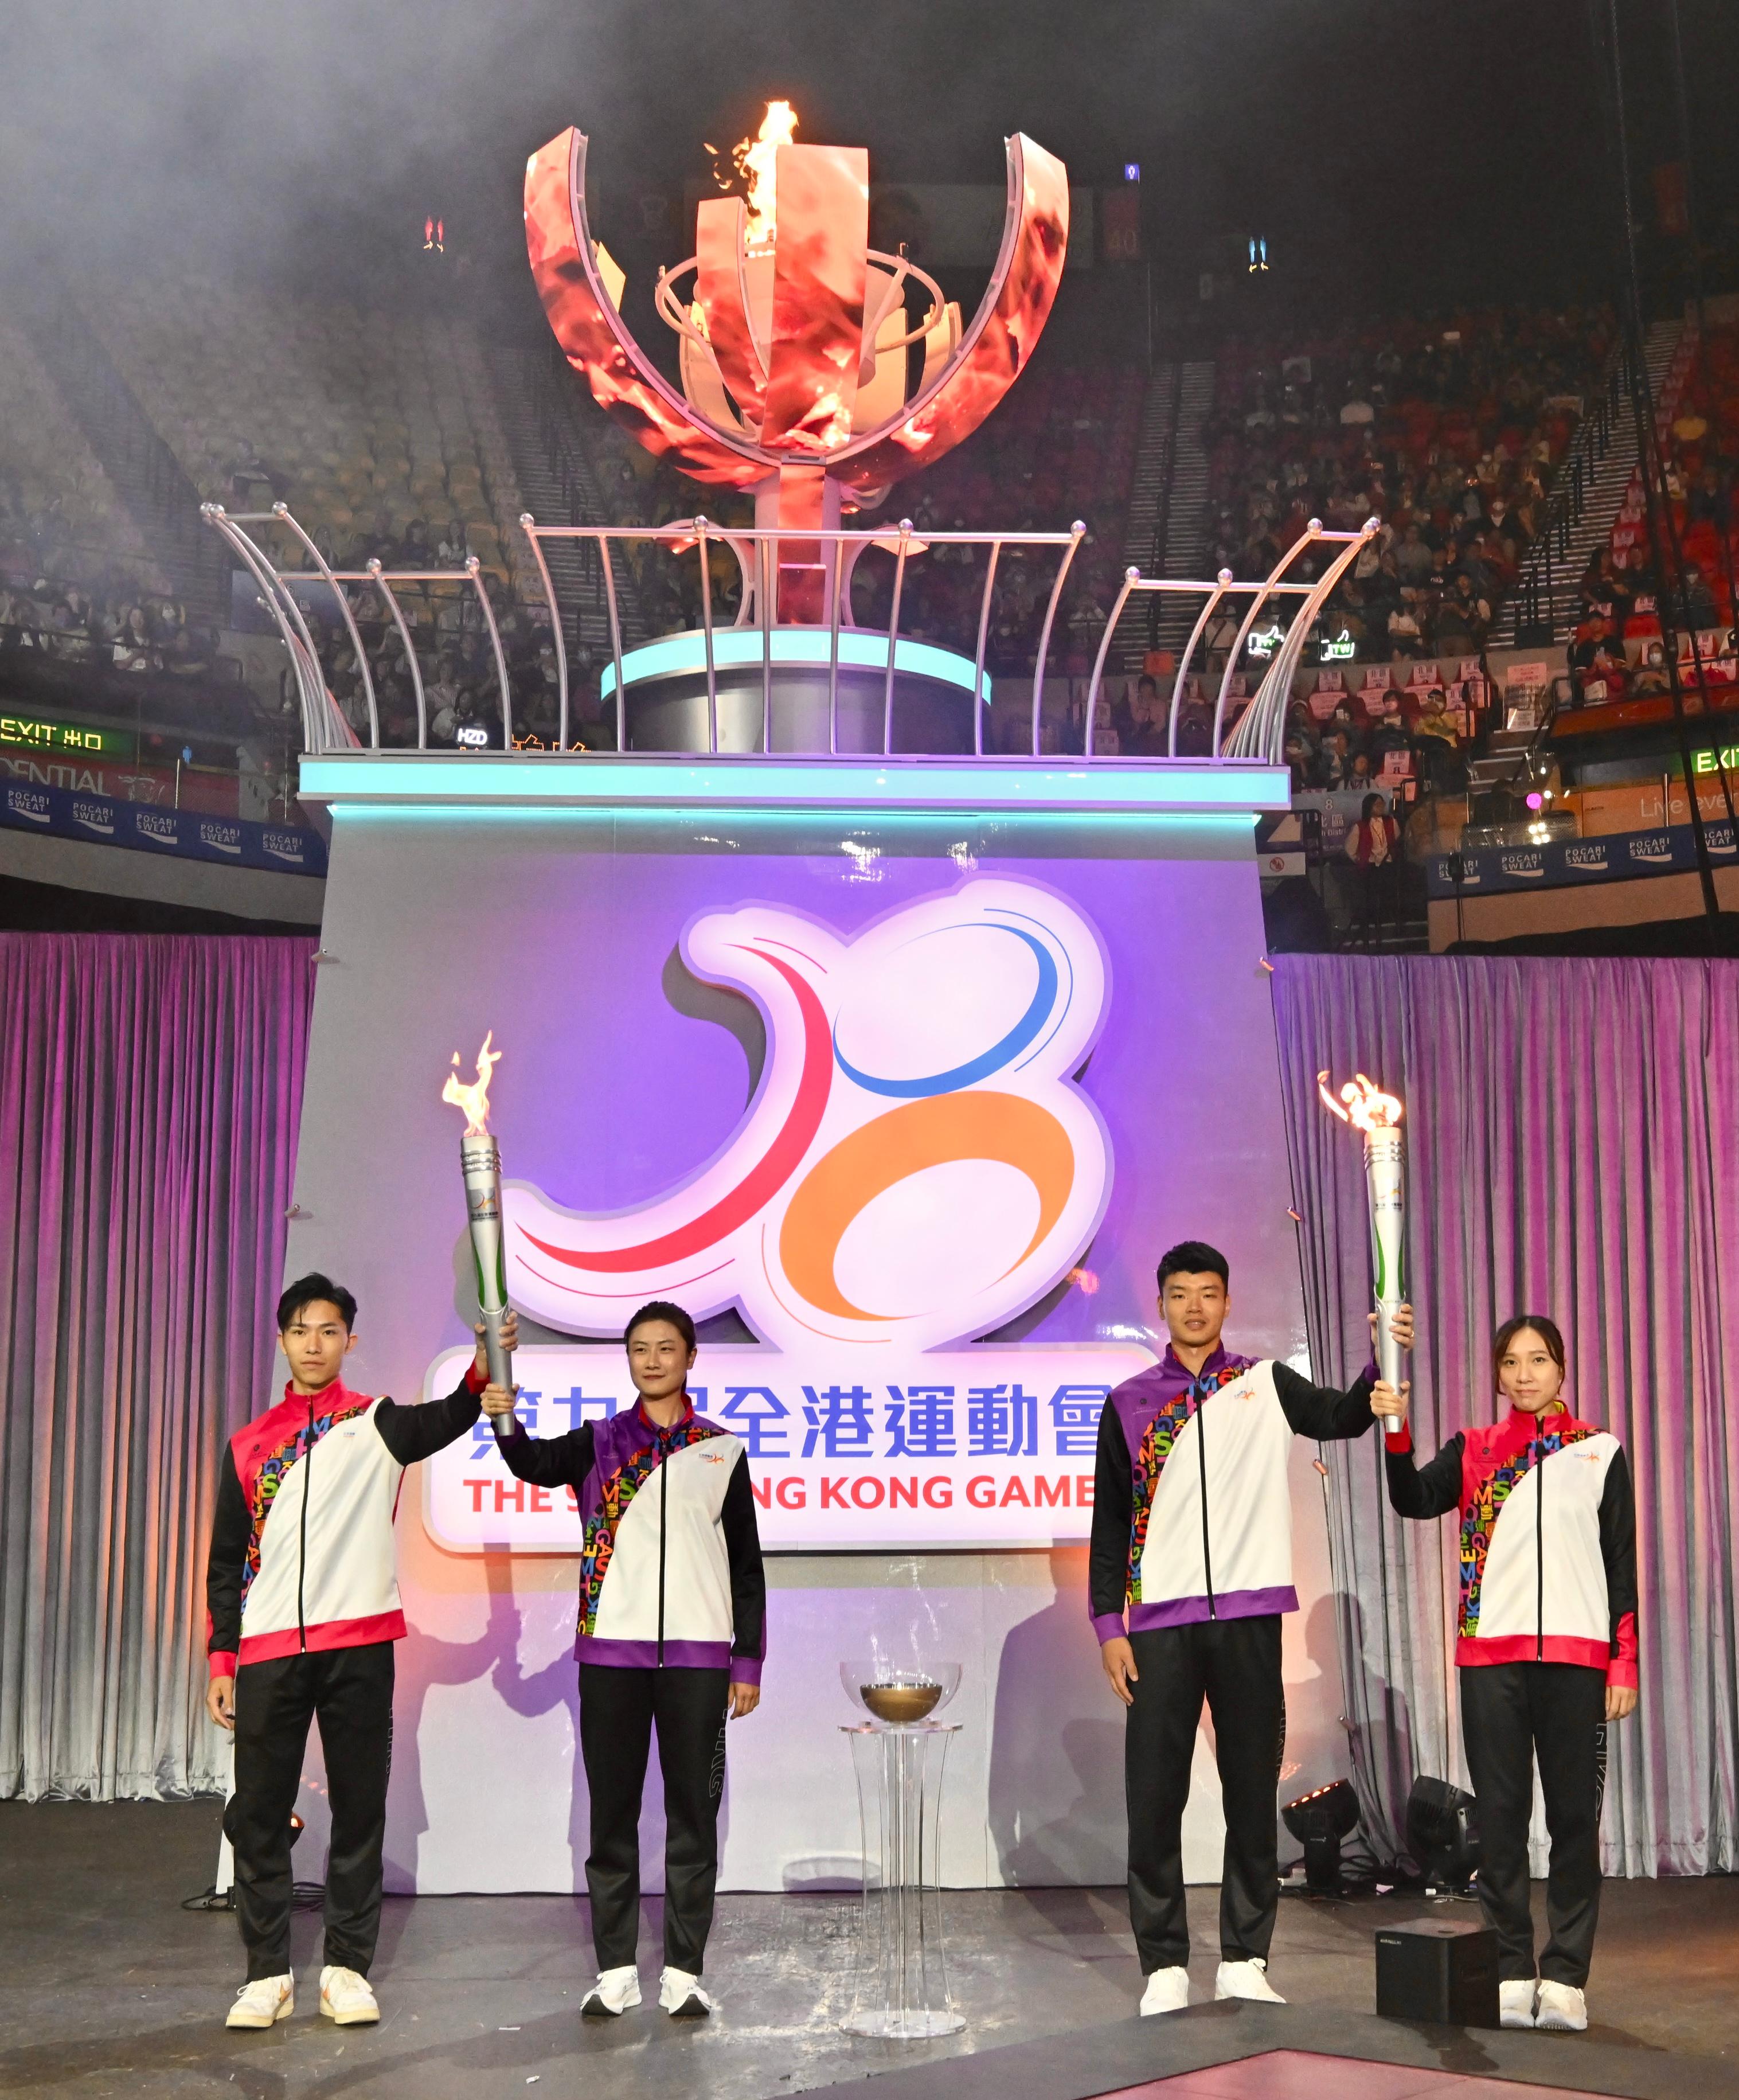 国家奥运金牌运动员丁宁（左二）和王懿律（右二）与香港奖牌运动员许得恩（左一）和苏慧音（右一）今日（四月二十一日）在第九届全港运动会开幕典礼燃点圣火。